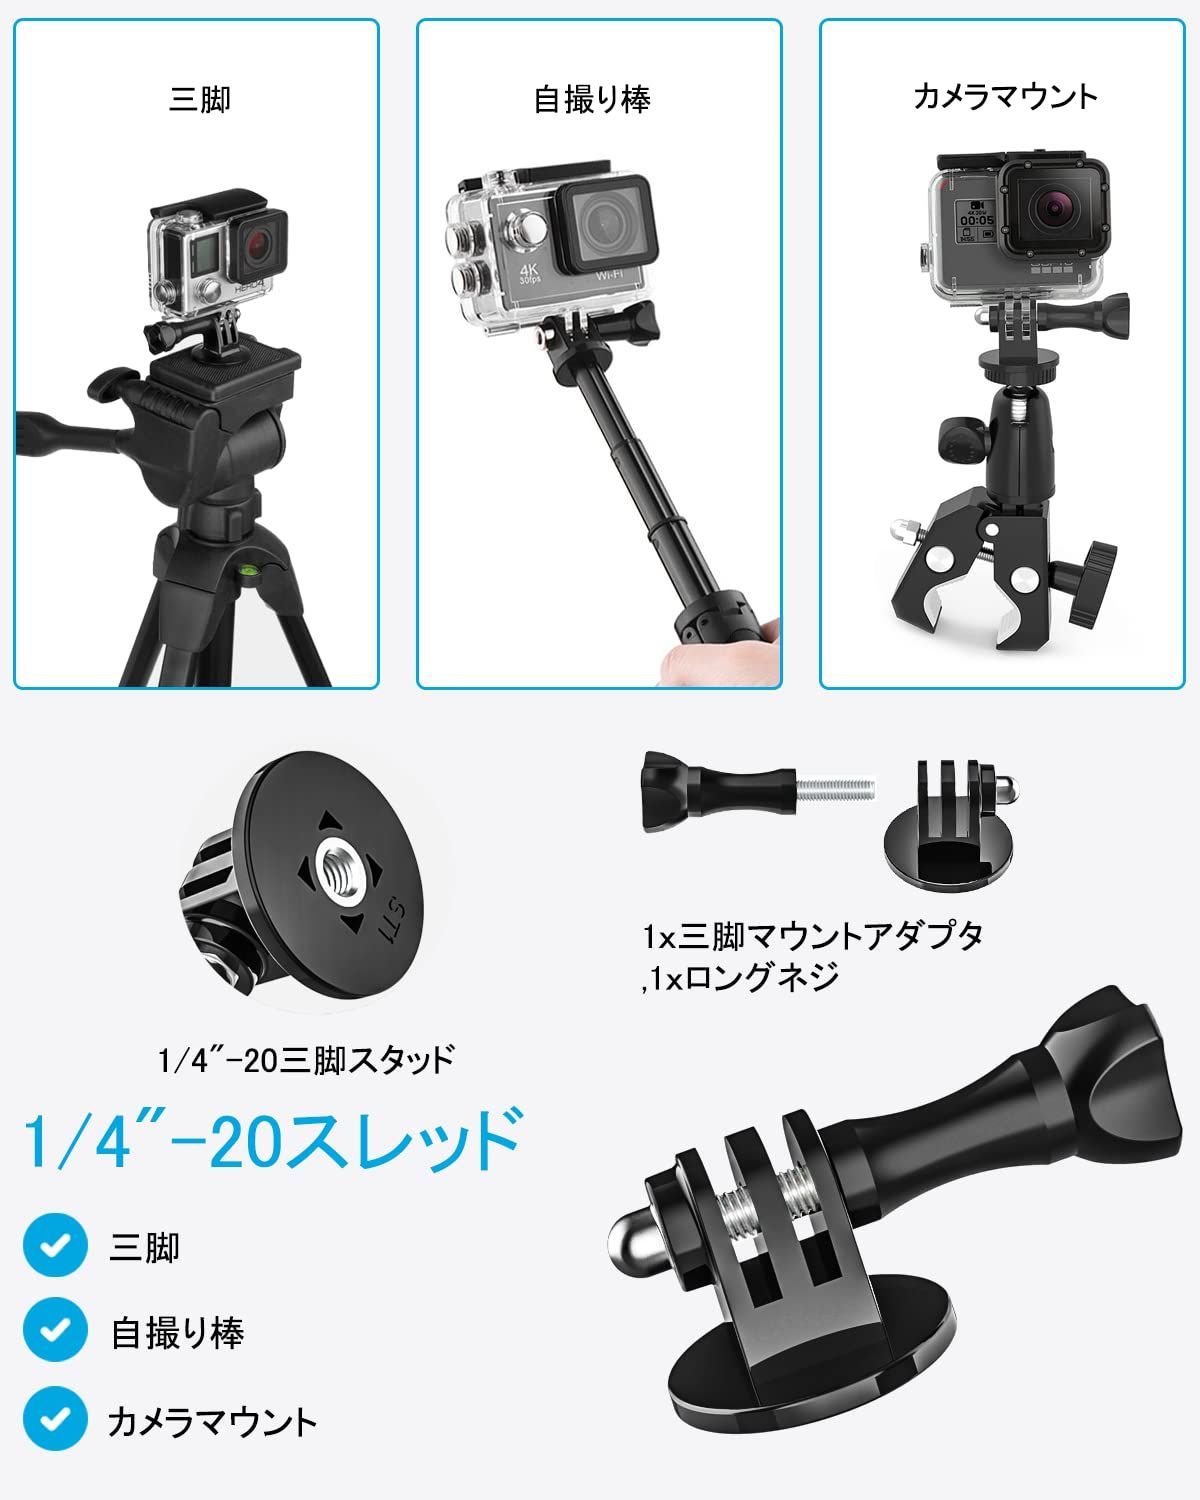 EXSHOW カメラホルダー 自転車・バイク・オートバイマウント 1 4ネジ 360度回転 三脚式マウント デジタルカメラ GoPro Hero YI  4K Canon Garmin Nikon SONY CASIO Kodakに対応 - カメラ・ビデオカメラ・光学機器用アクセサリー